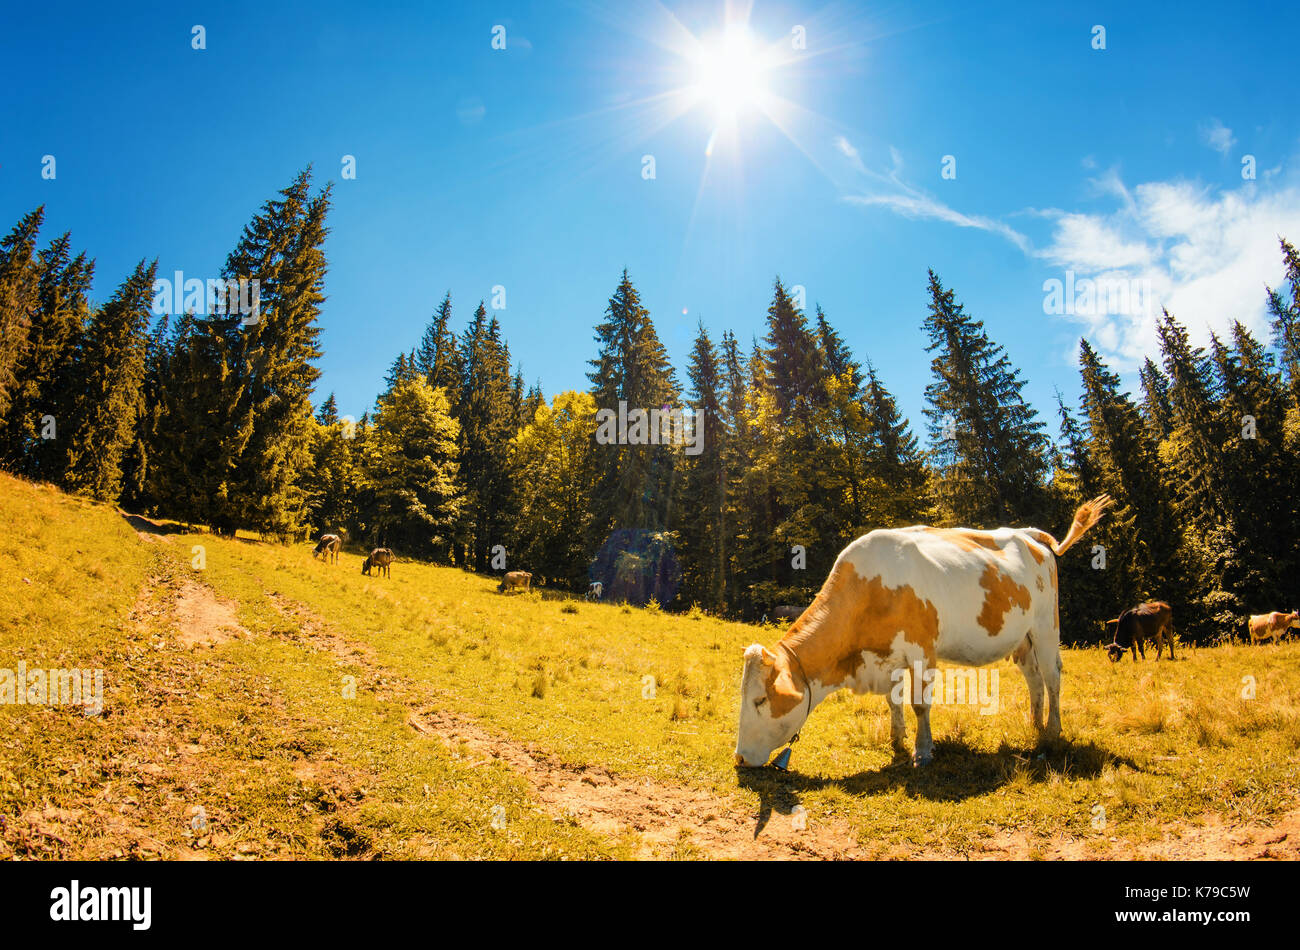 Gefleckte weiße Kuh frisst Gras auf Almwiese mit hohen Tannen iagainst der blaue Himmel mit der Sonne und Wolken in einer bergigen Landschaft. Herbst c Stockfoto